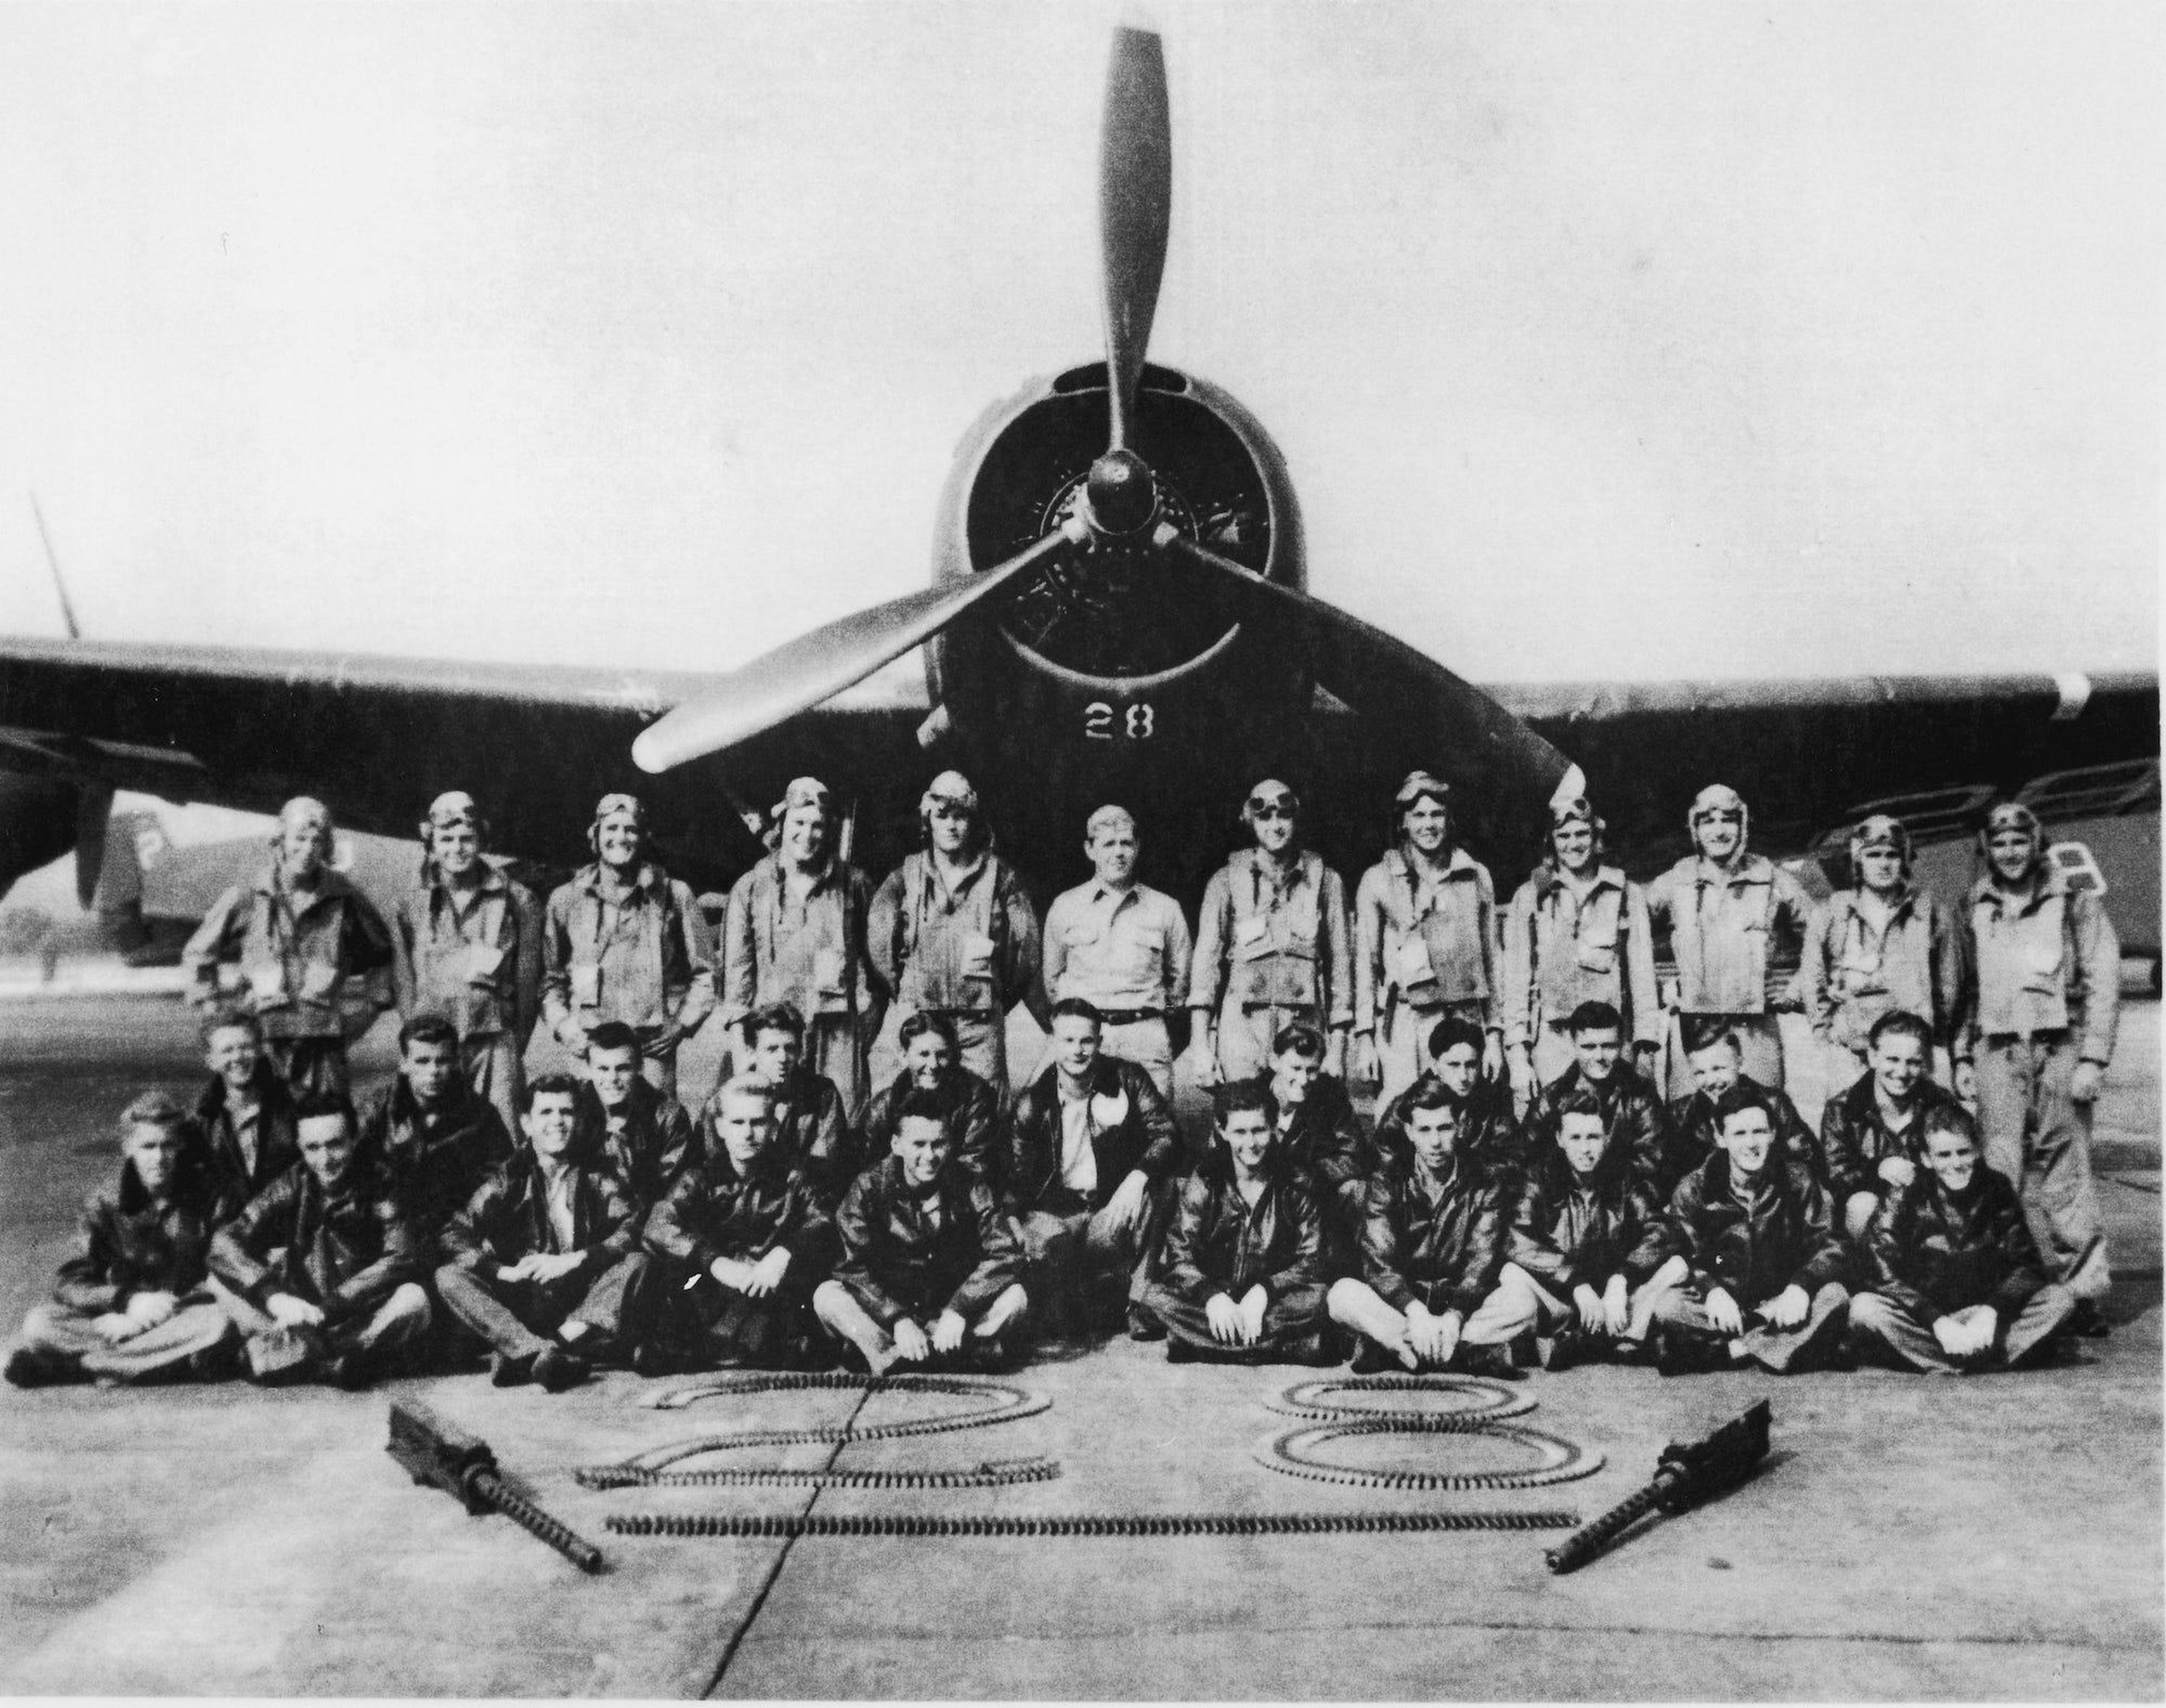 Retrato del legendario Escuadrón Perdido y del Vuelo 19 que supuestamente desapareció en el Triángulo de las Bermudas poco después de la Segunda Guerra Mundial.